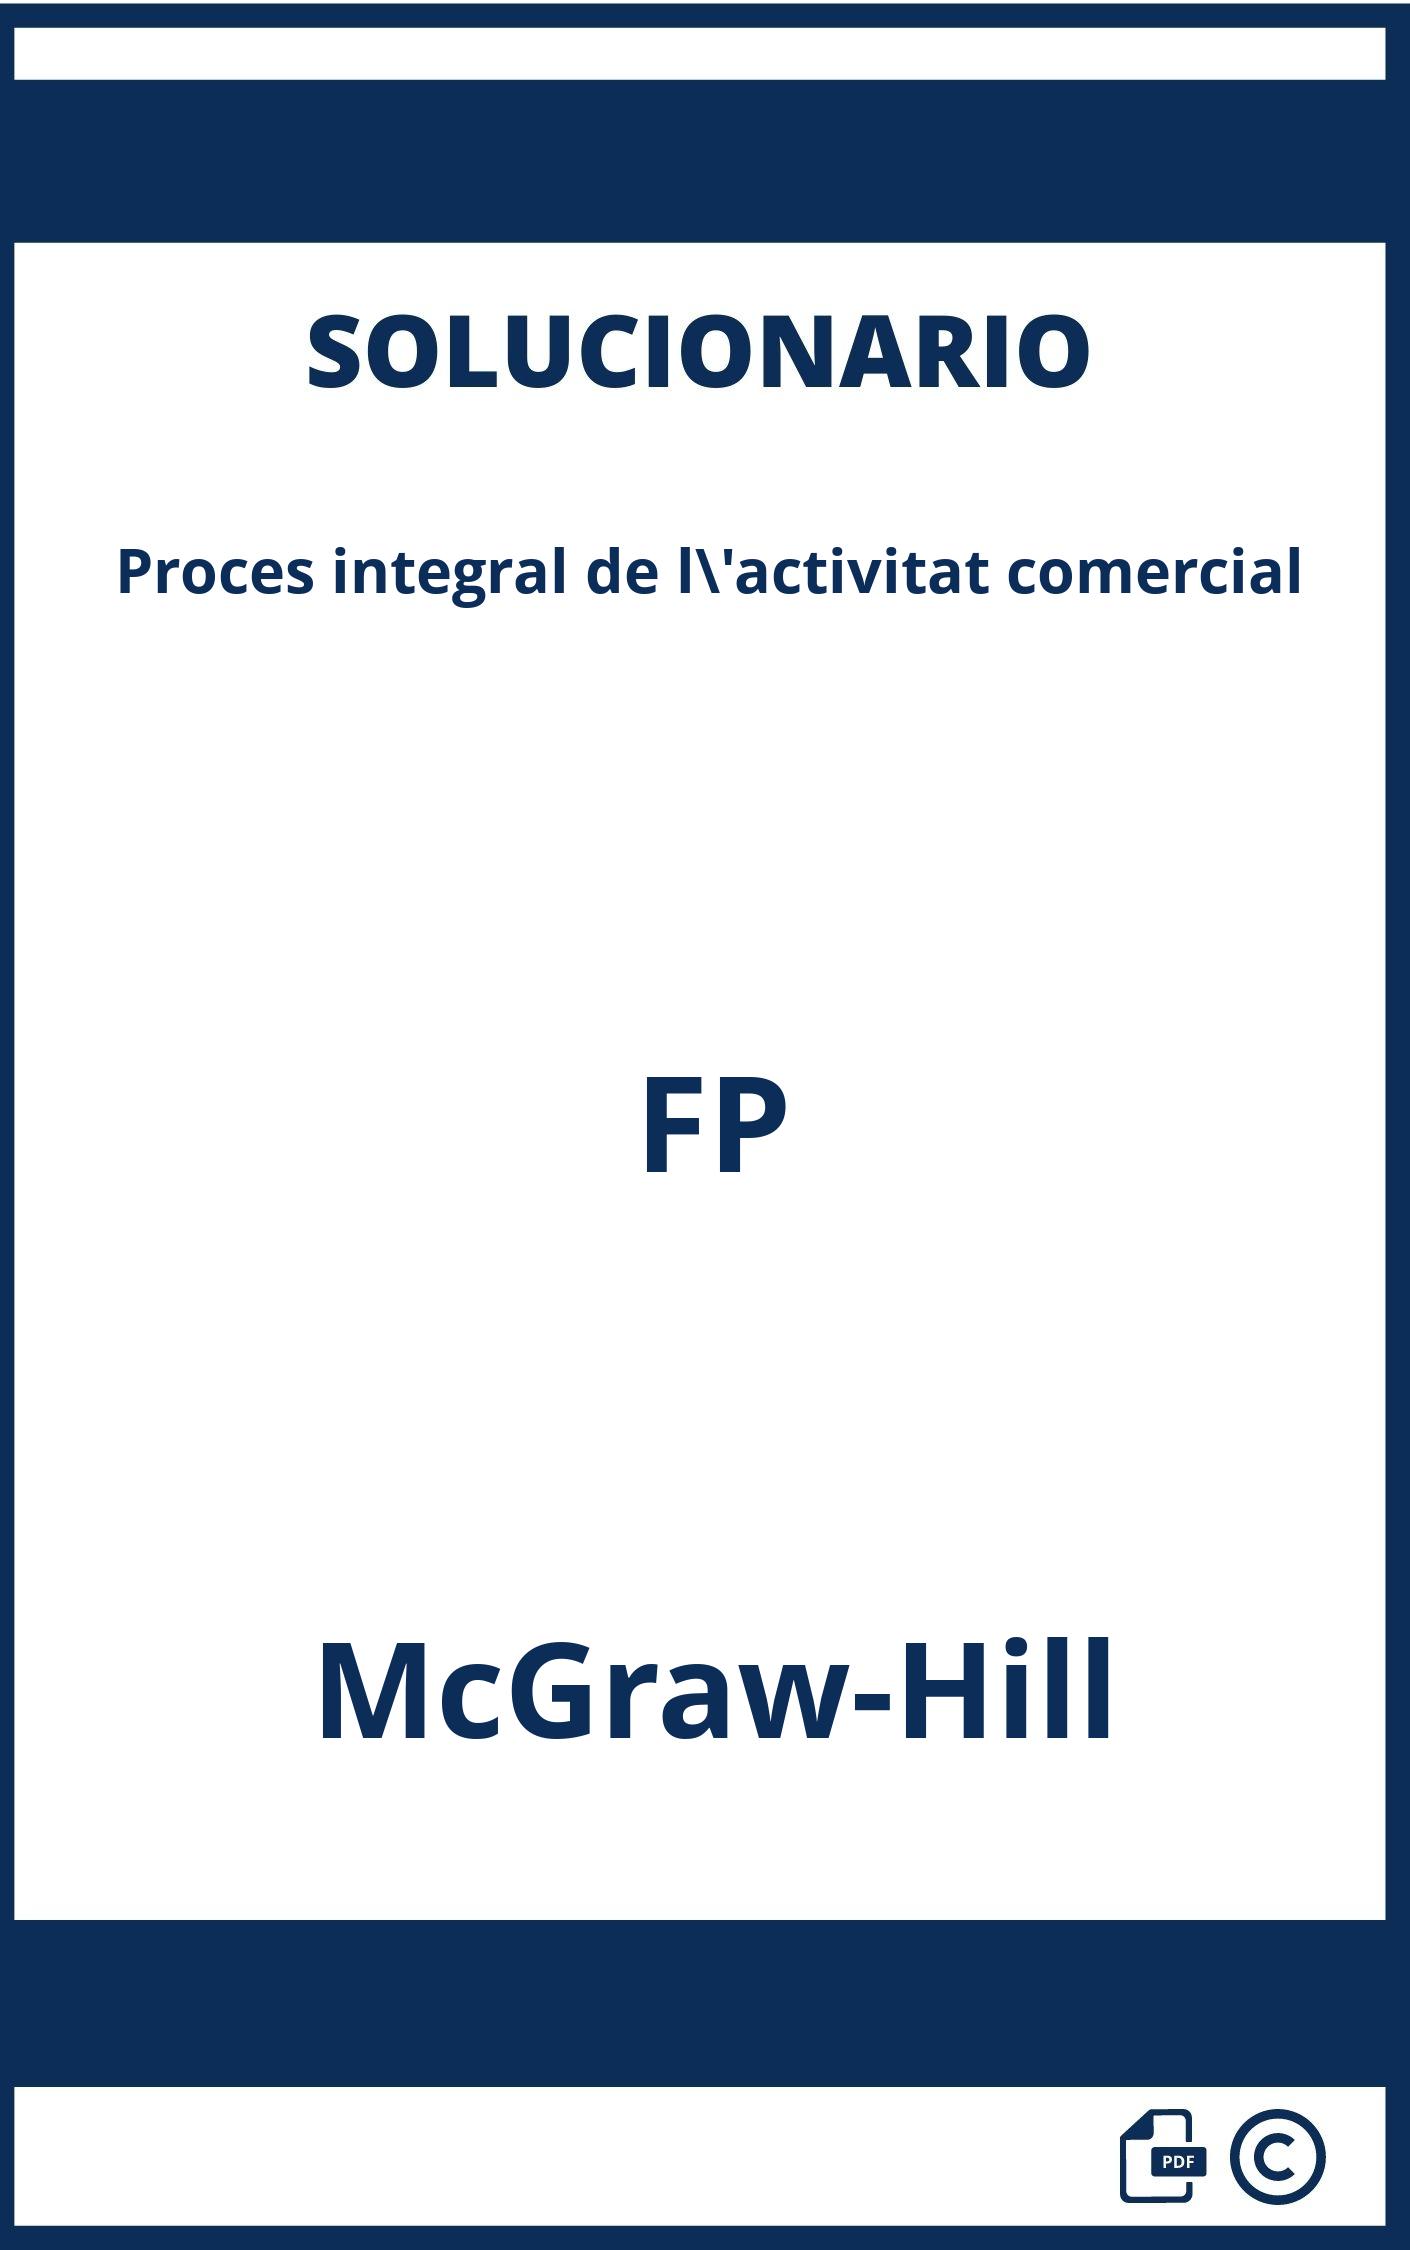 Solucionario Proces integral de l'activitat comercial FP McGraw-Hill